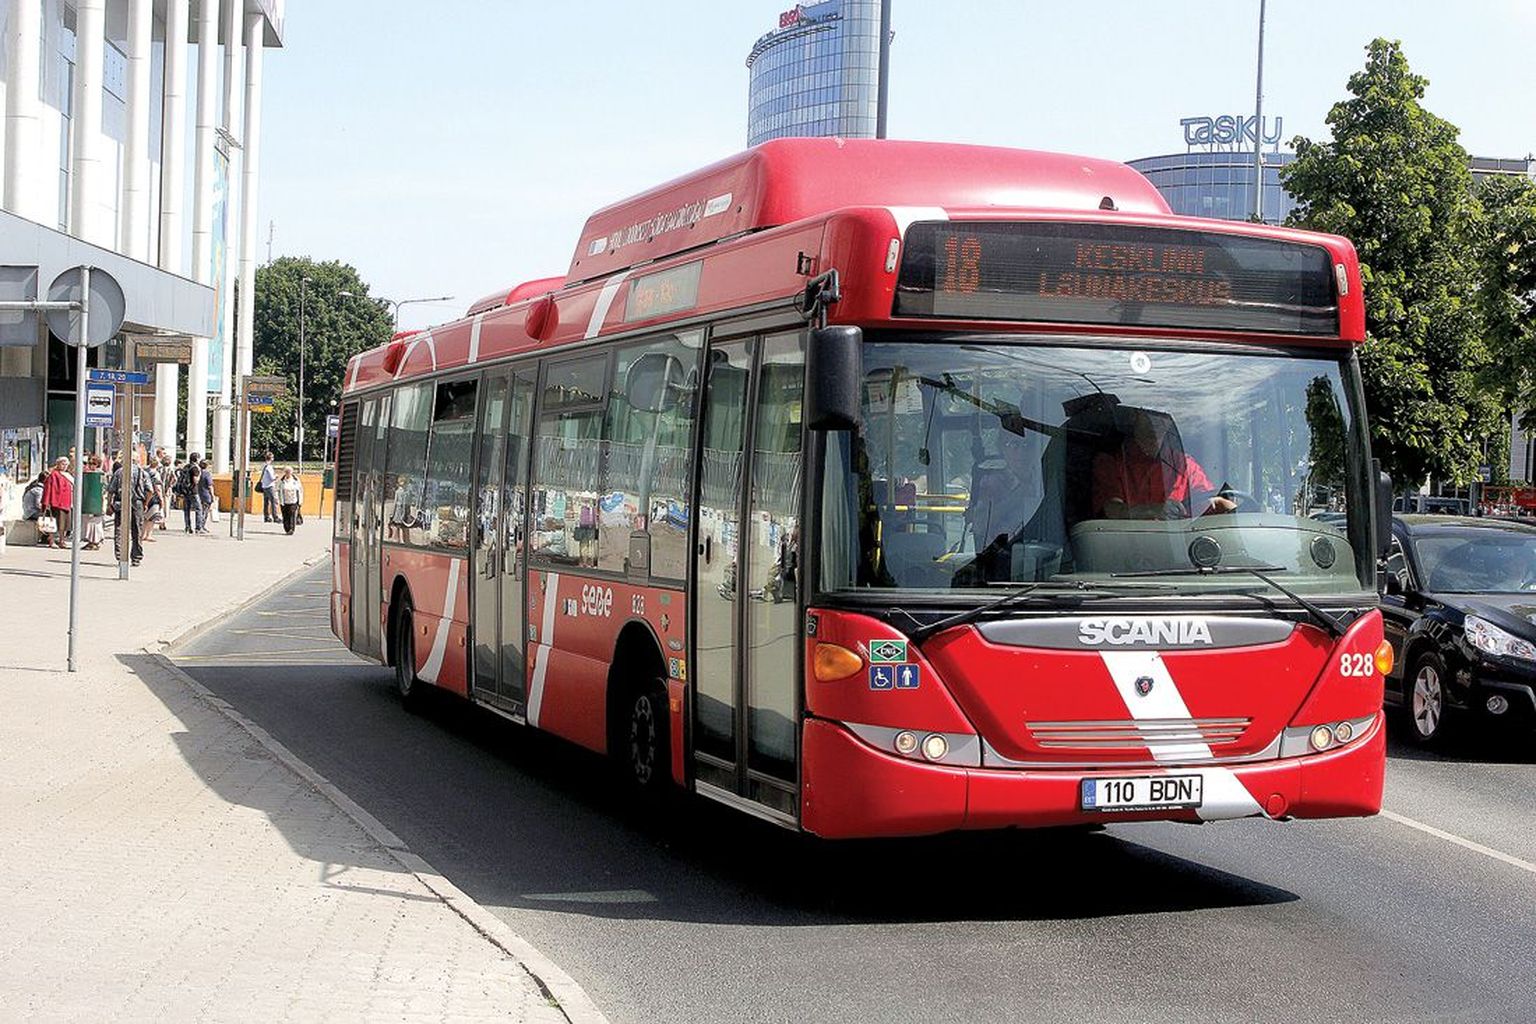 Sebe senised linnaliinibussid peaksid kehtiva lepingu järgi sõitma Tartus tuleva aasta juuni lõpuni, kuid kuna uus bussihange on vaidlustesse takerdunud, valmistub linn Sebega lepingut pikendama.